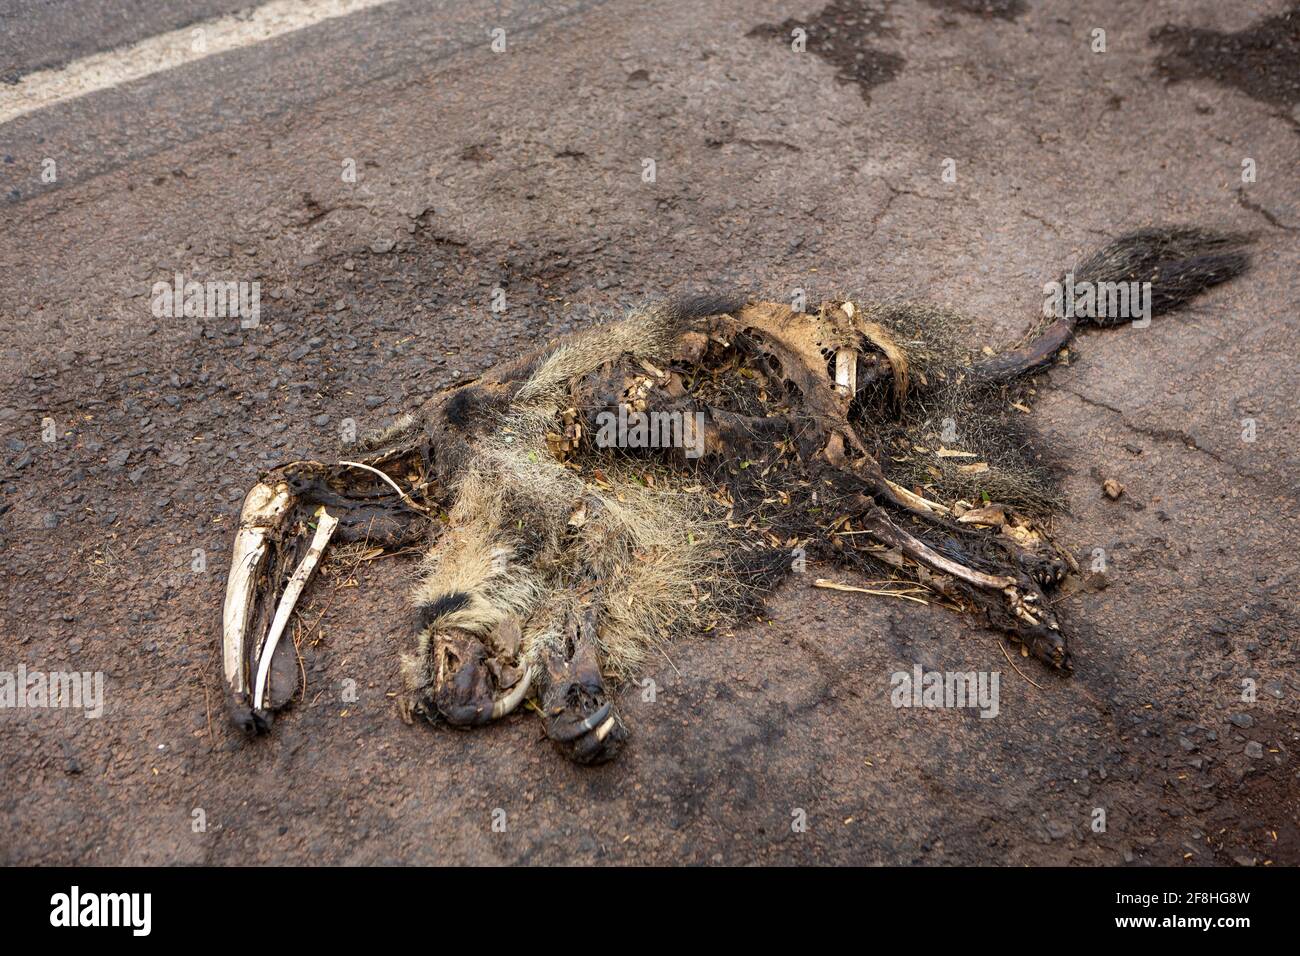 El oso hormiguero gigante muerto, Myrmecophaga tridactyla, se fue corriendo y murió en vehículo en la carretera. Destrucción de carreteras de animales salvajes en la selva amazónica, Brasil. Foto de stock